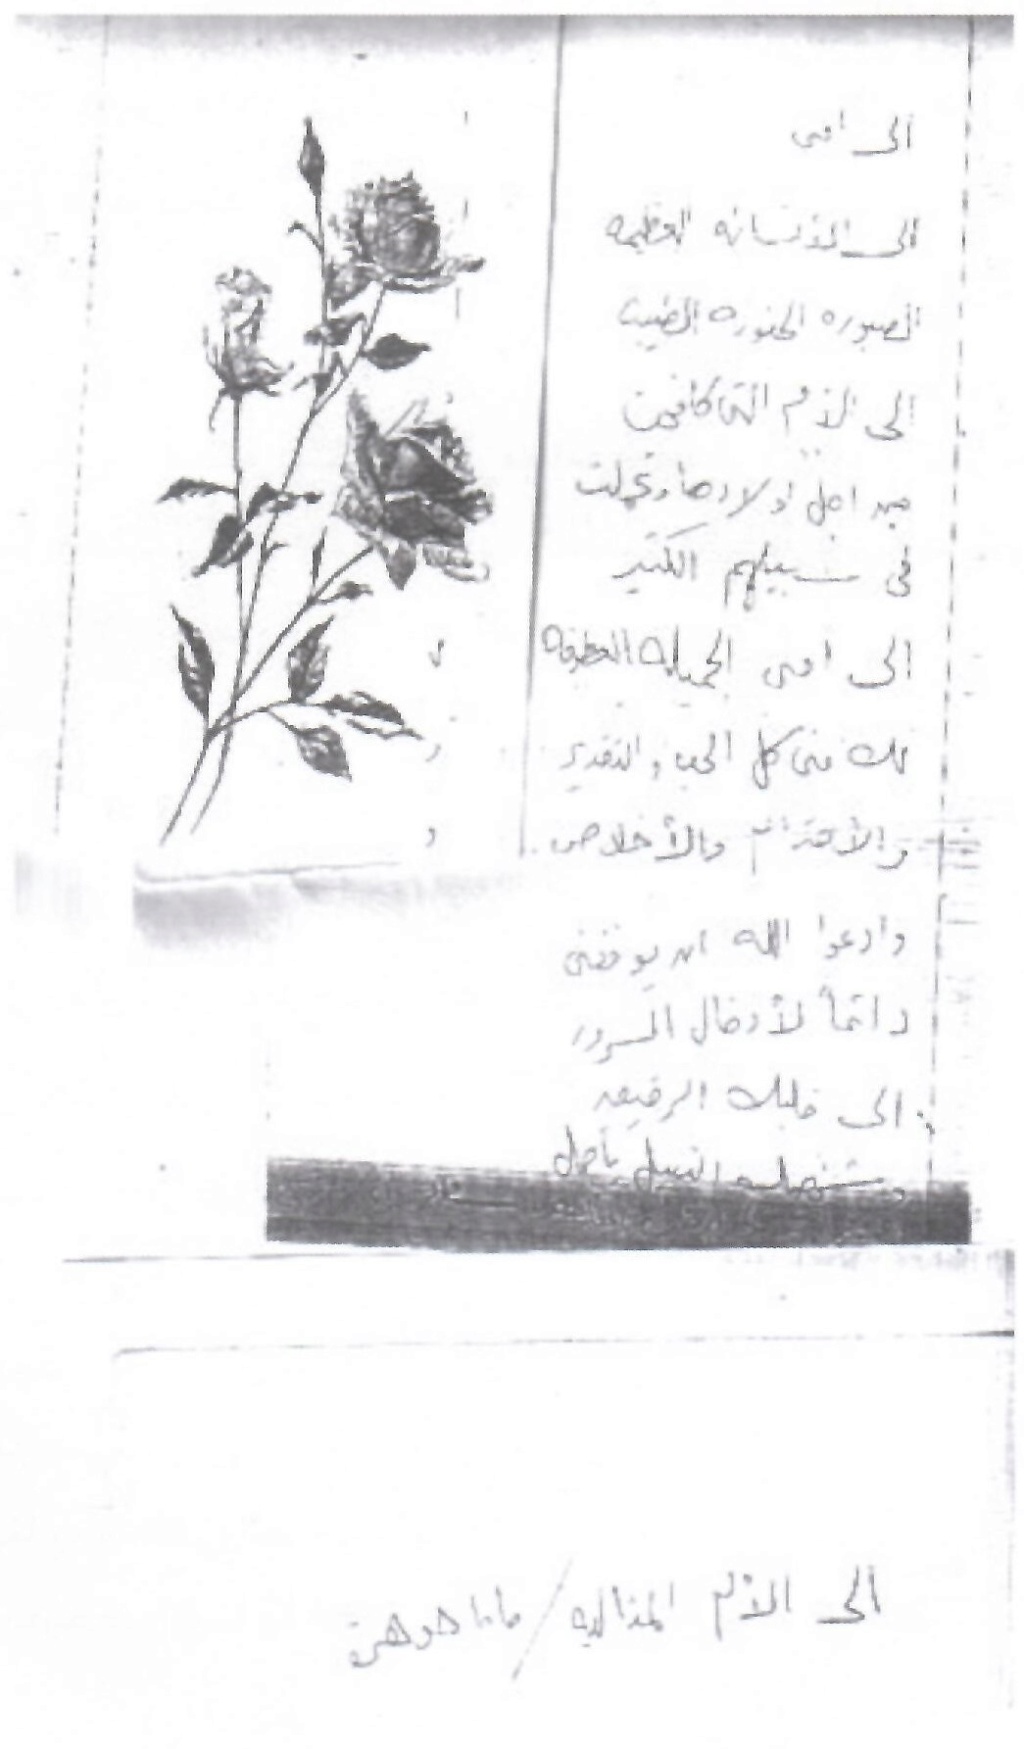 وثيقة مكتوبة : رسالة تقدير من سعاد حسني إلى أمها 1976 م 2408